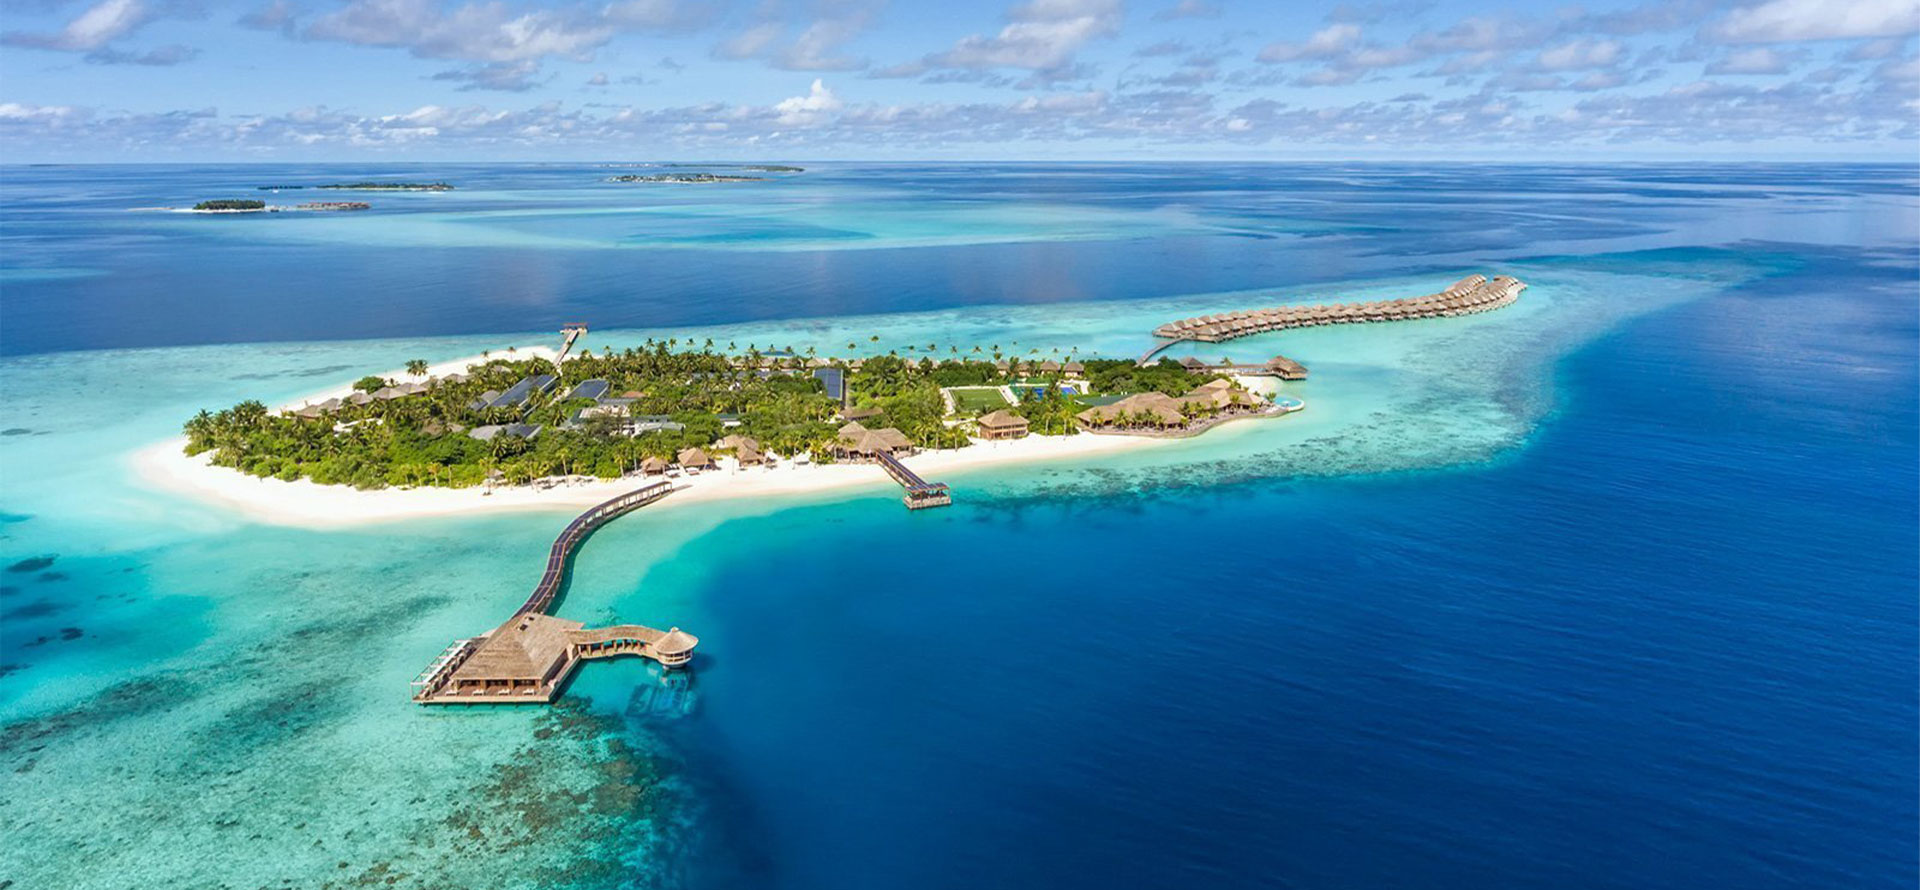 Maldives and bora bora islands.